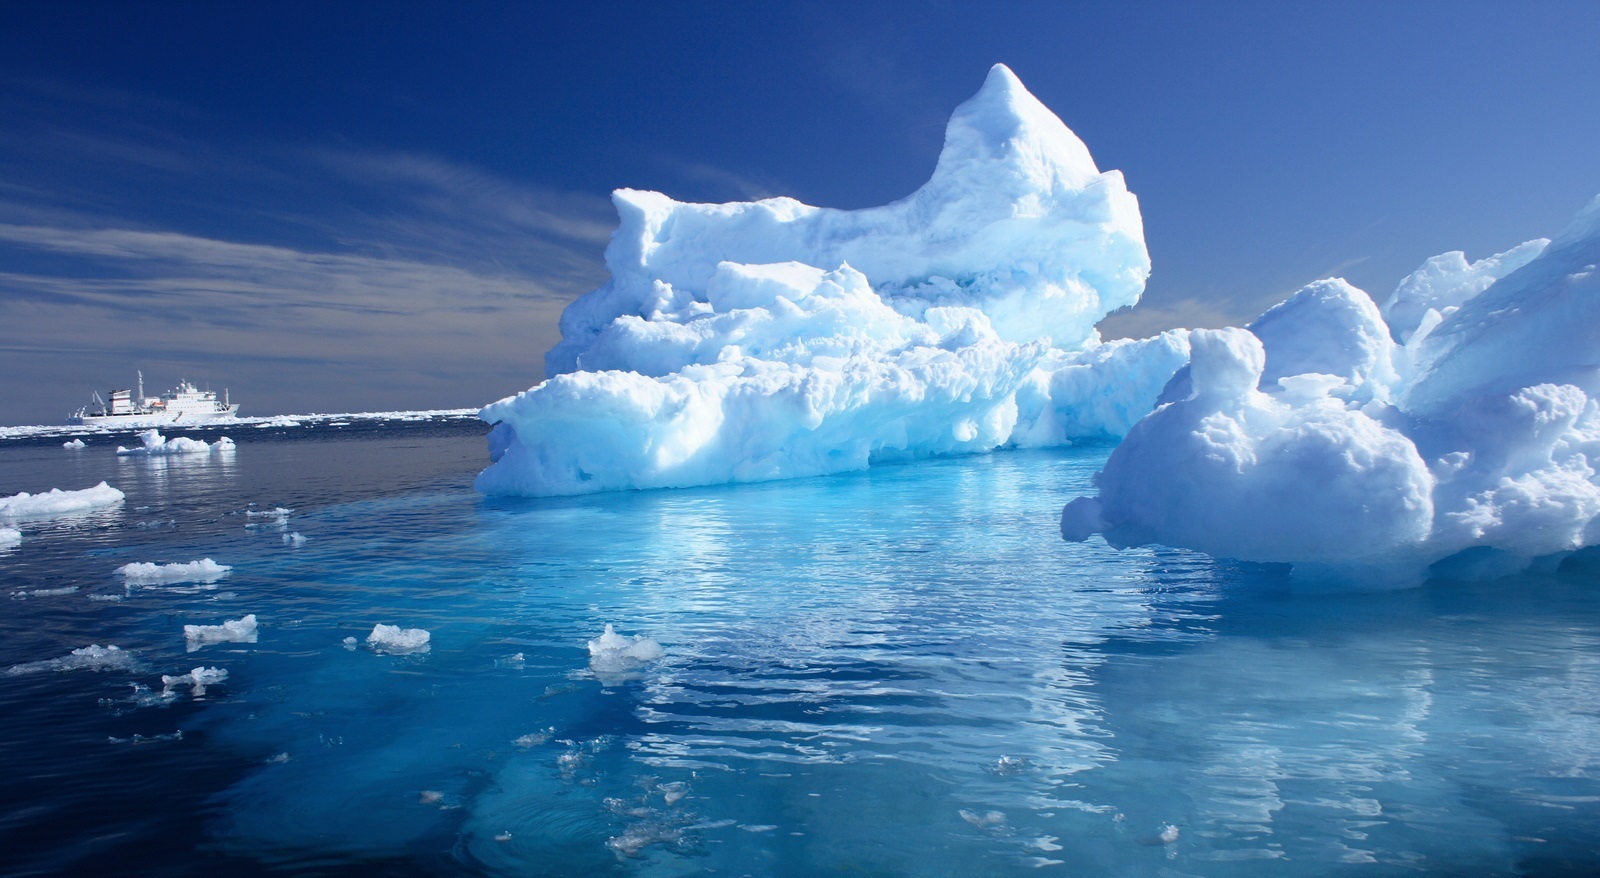 زیبایی های طبیعت - عکس قطب جنوب